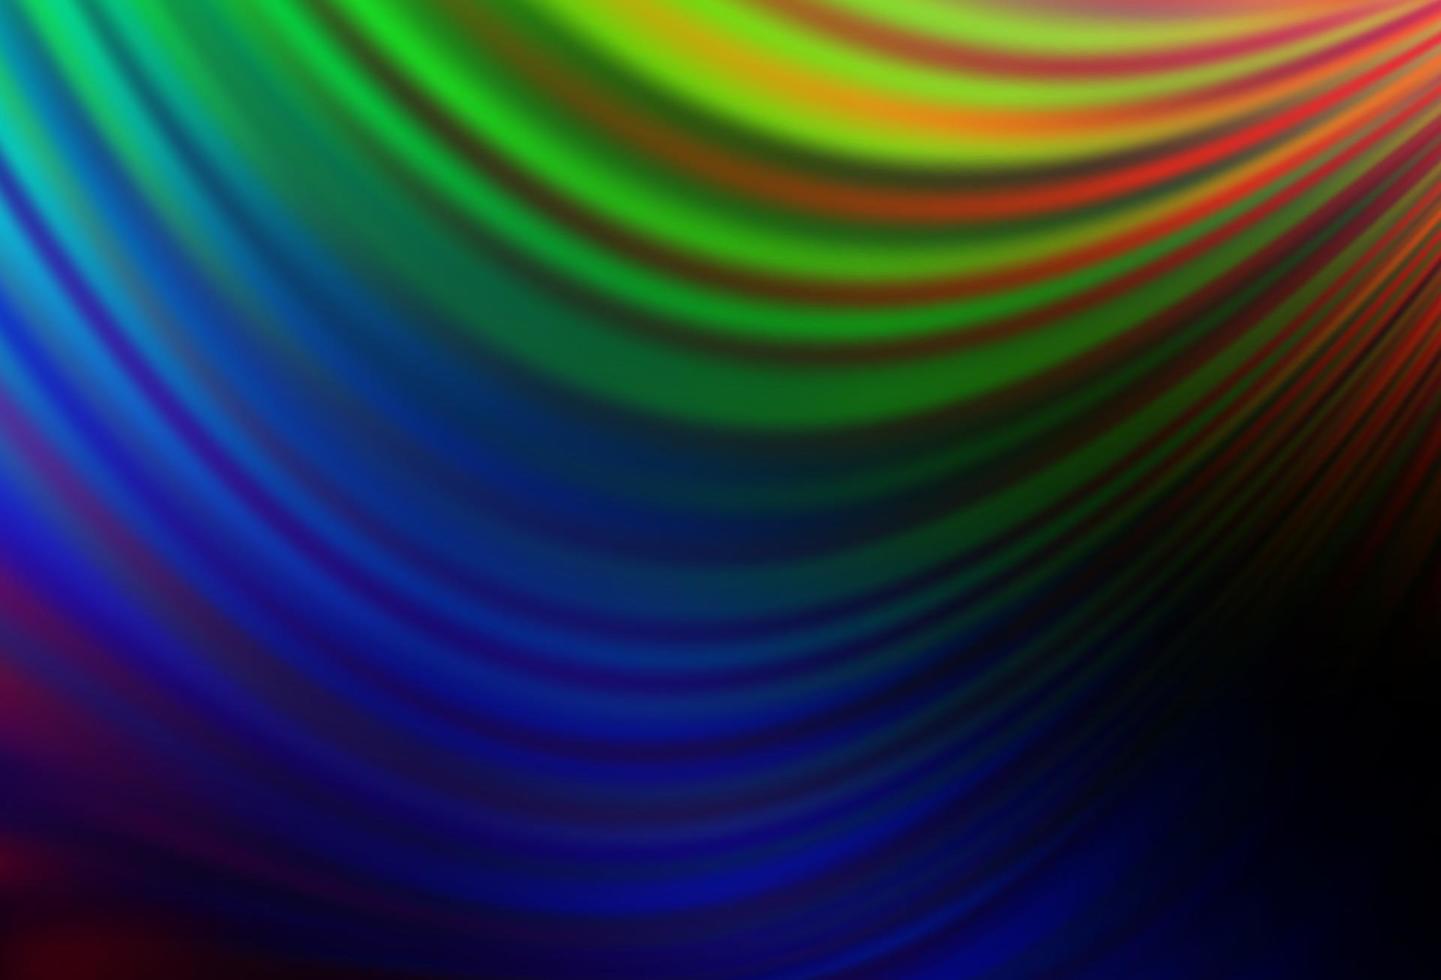 multicolore scuro, motivo vettoriale arcobaleno con cerchi curvi.